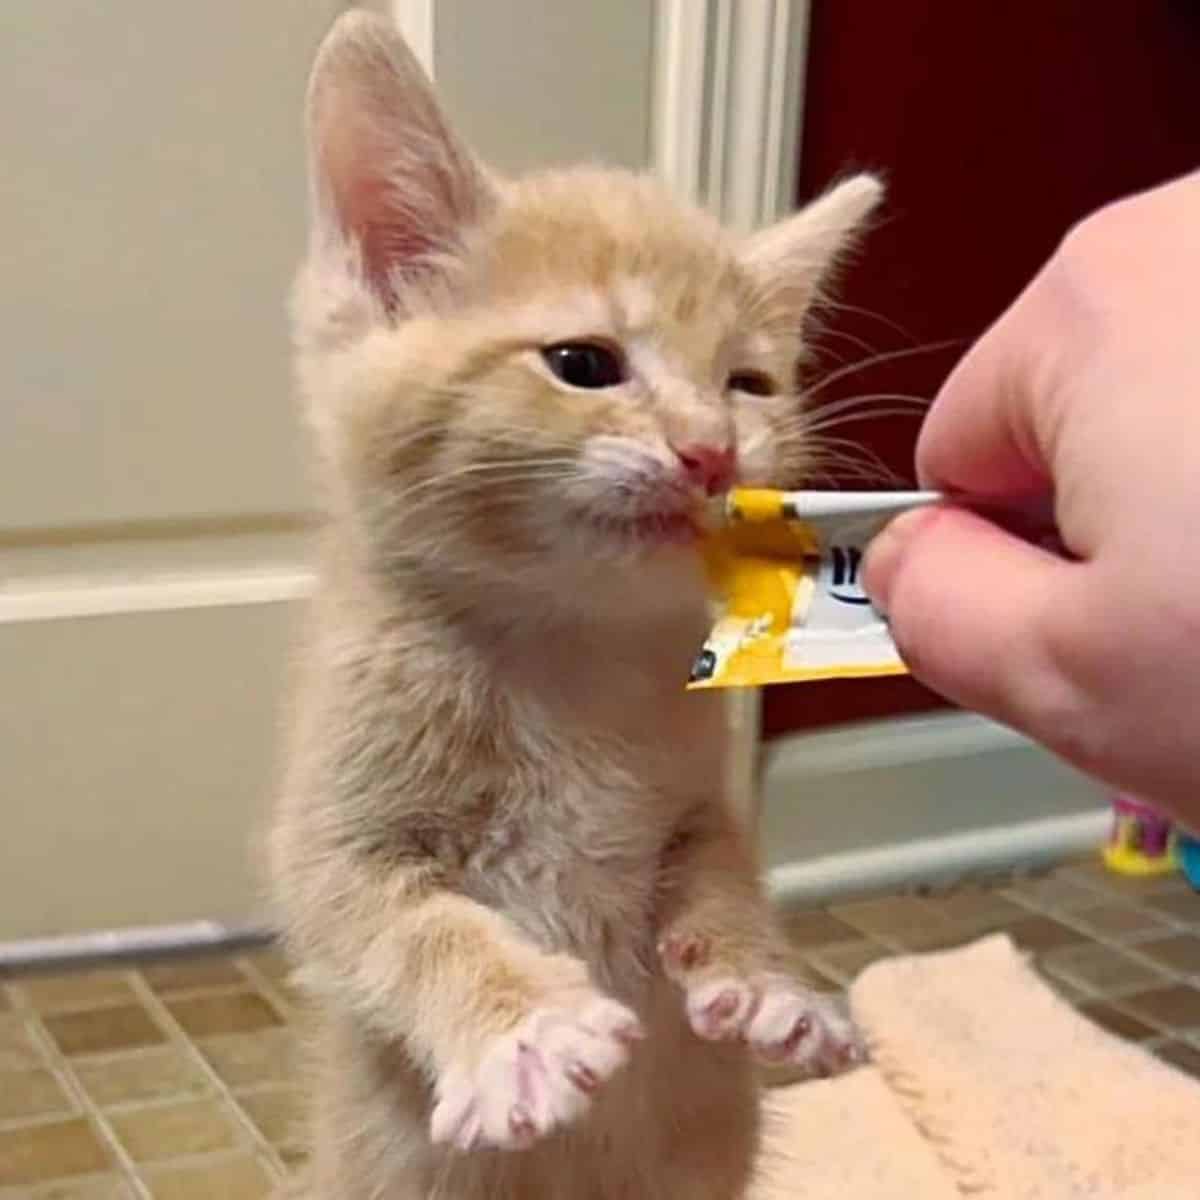 owner feeding little kitten